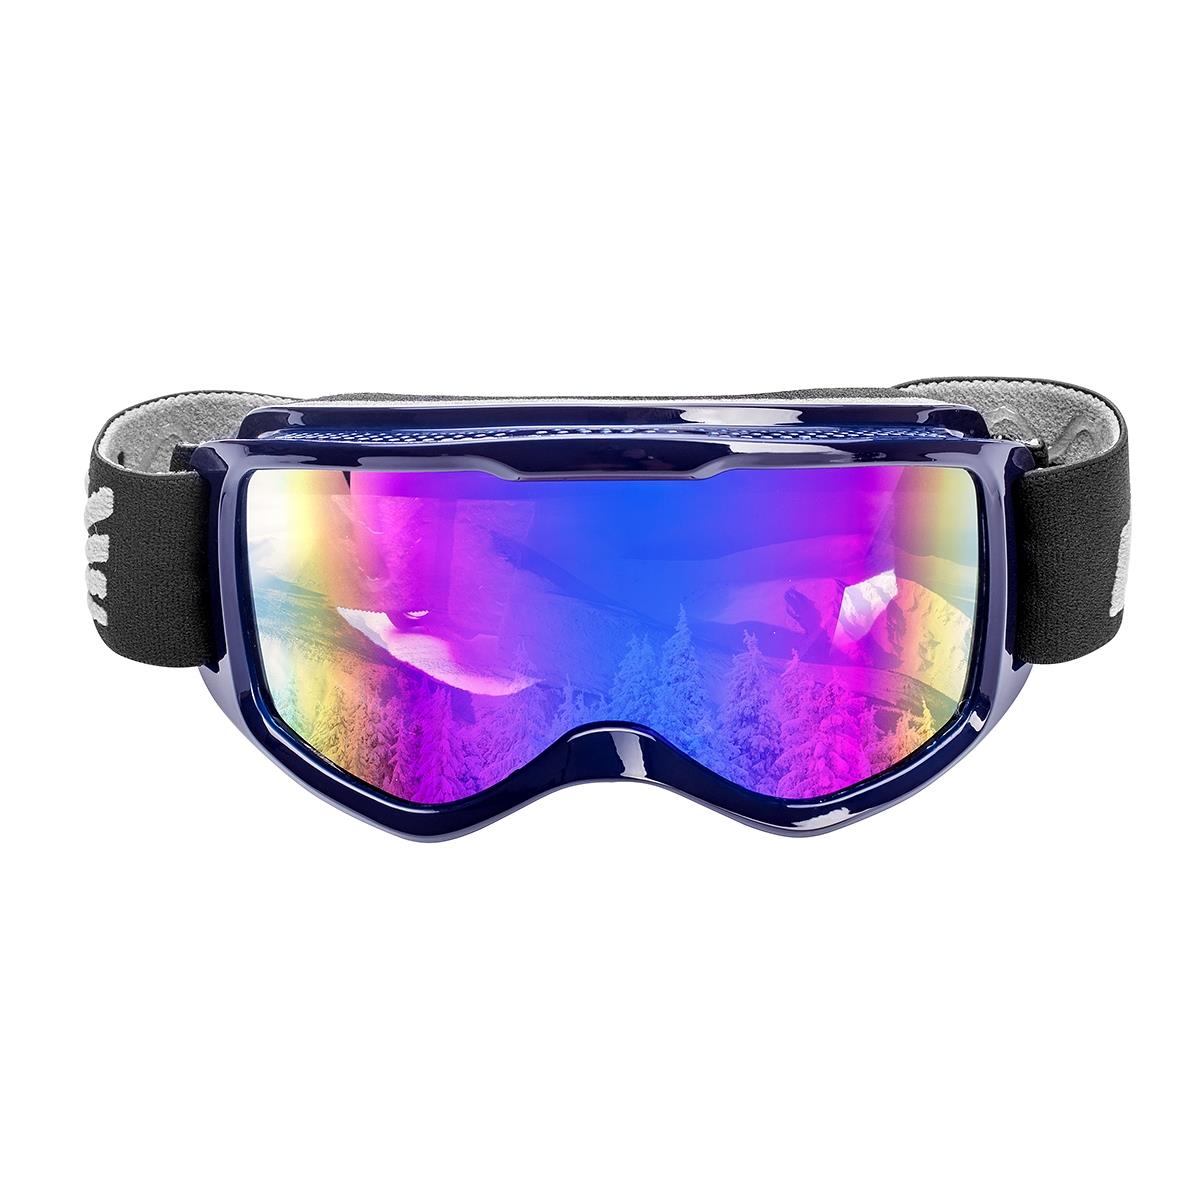 Очки горнолыжные HS-HX-040 Helios очки для плавания защита от уф антизапотевающие от 7 лет поликарбонат bestway волна 21048